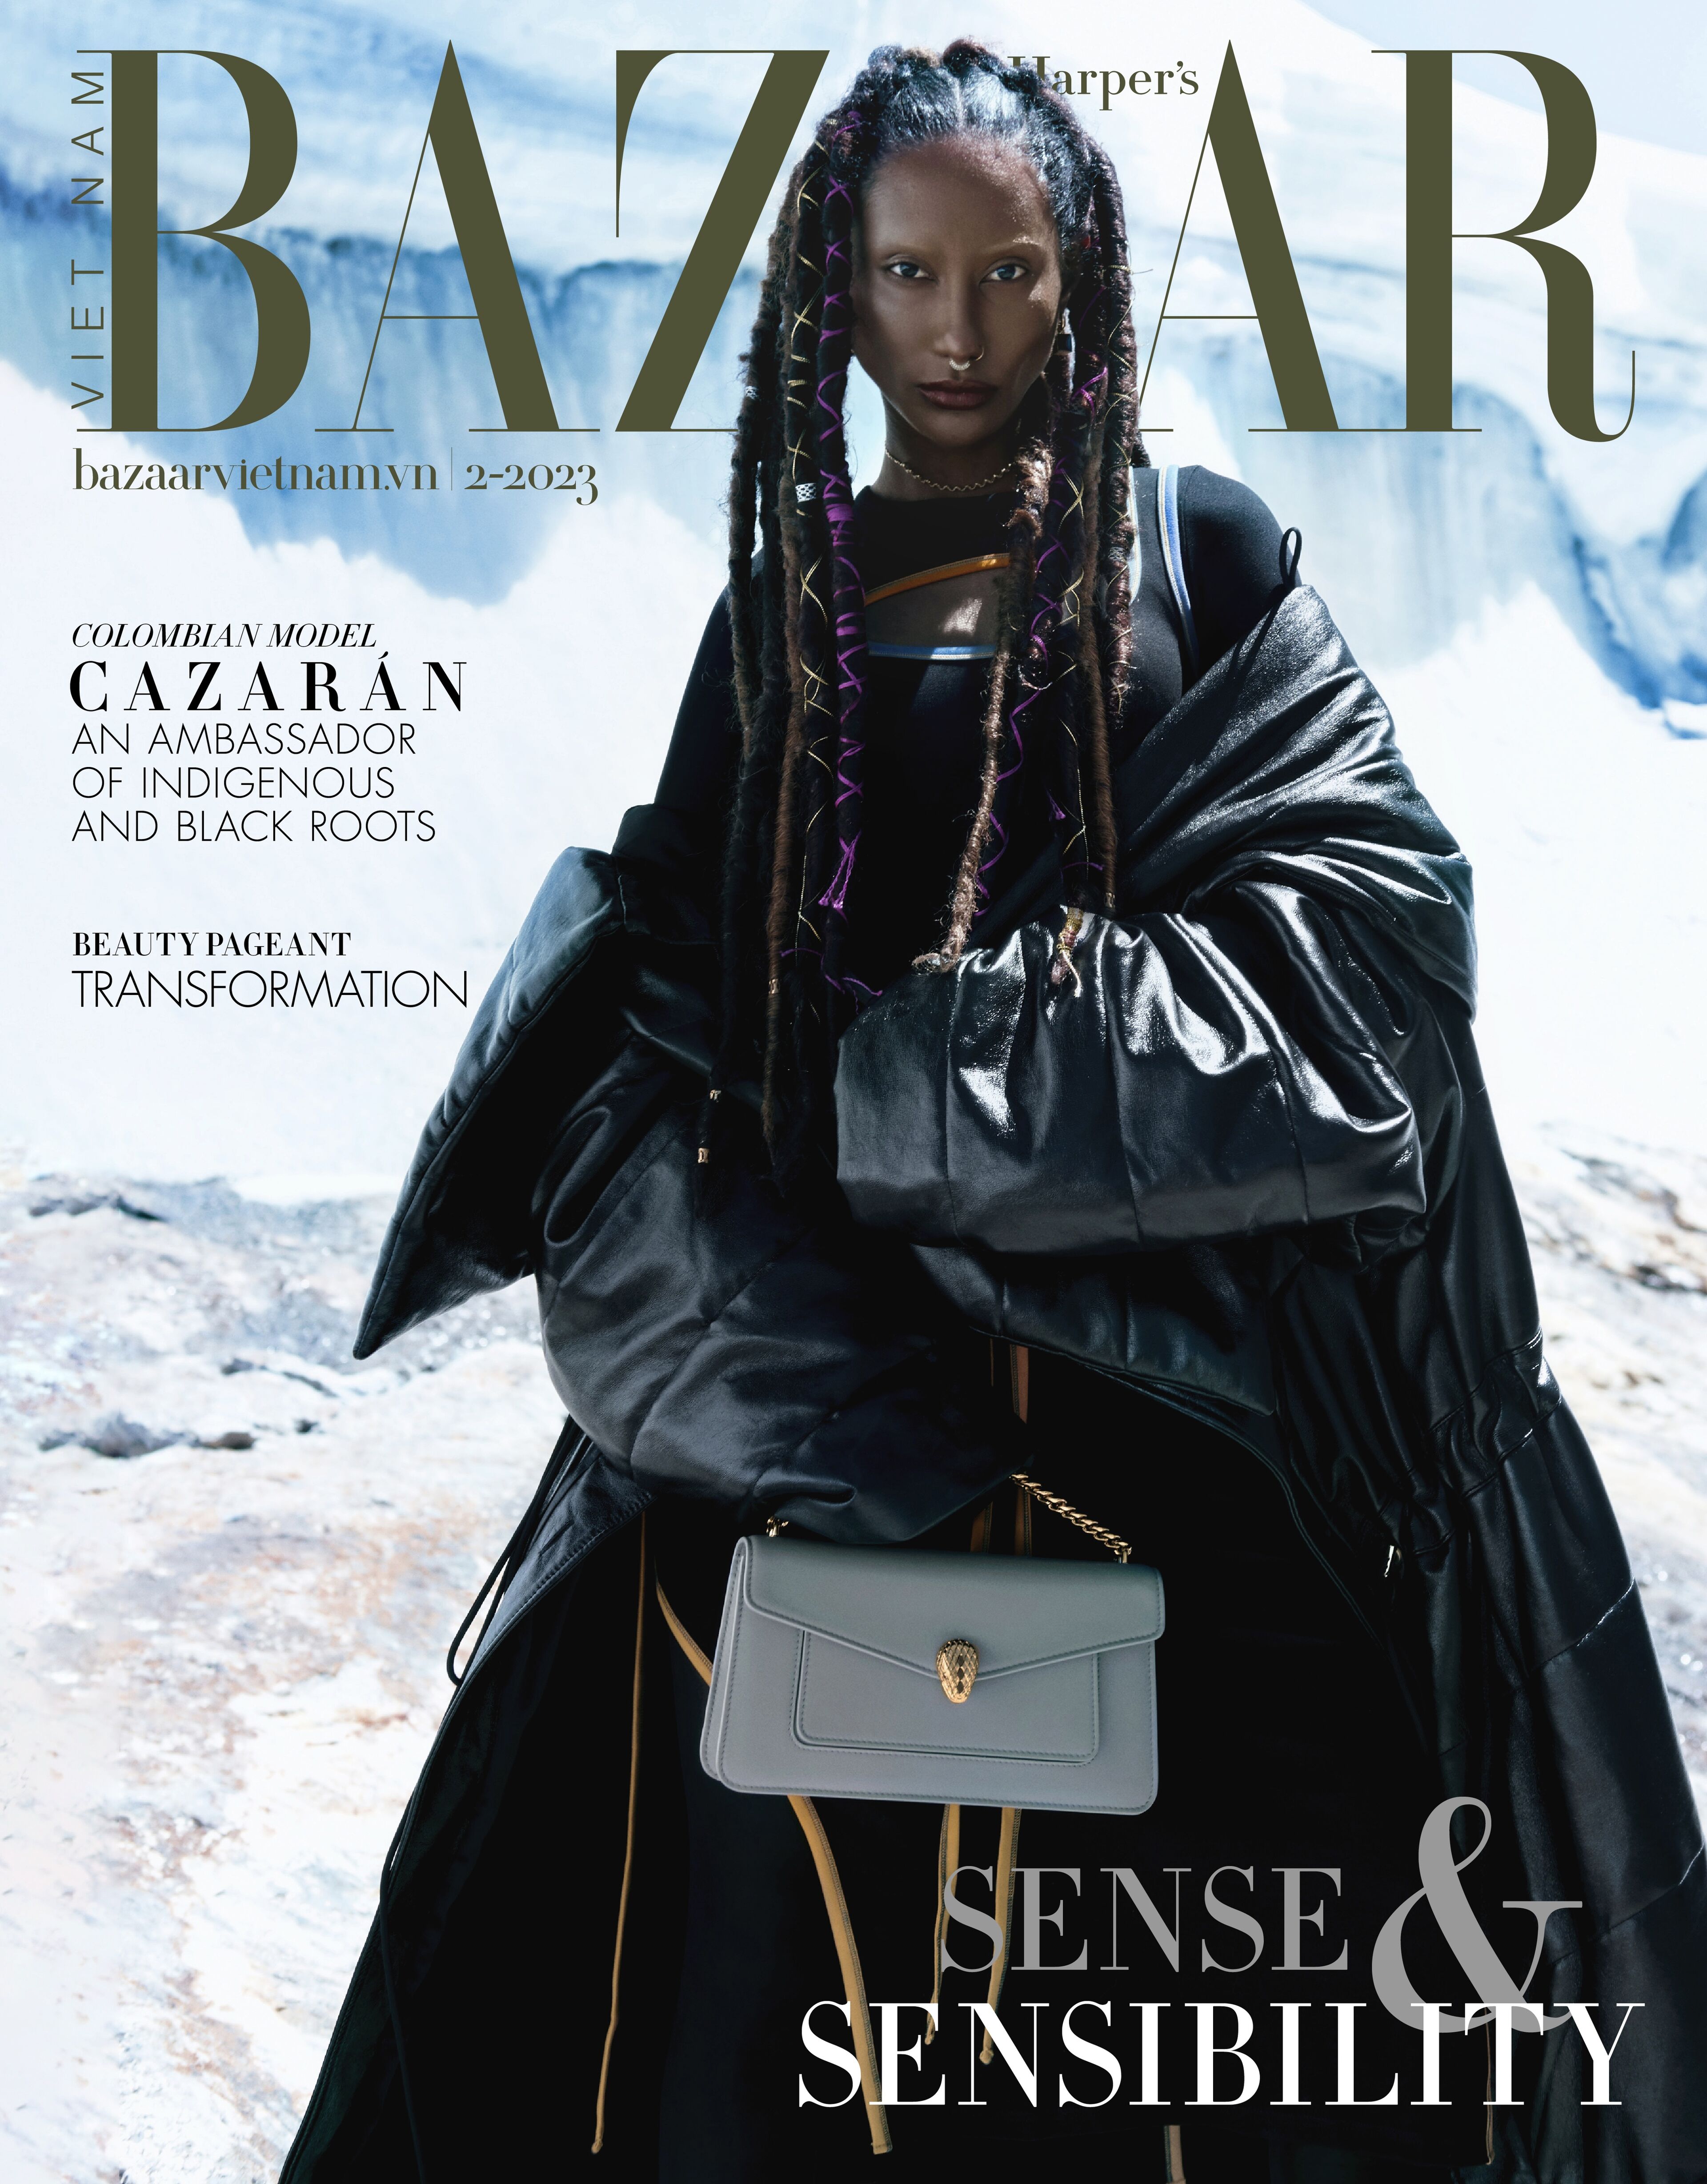 Una modelo adorna la portada de Harper's Bazaar Vietnam, contrastando la alta moda con un telón de fondo glaciar.